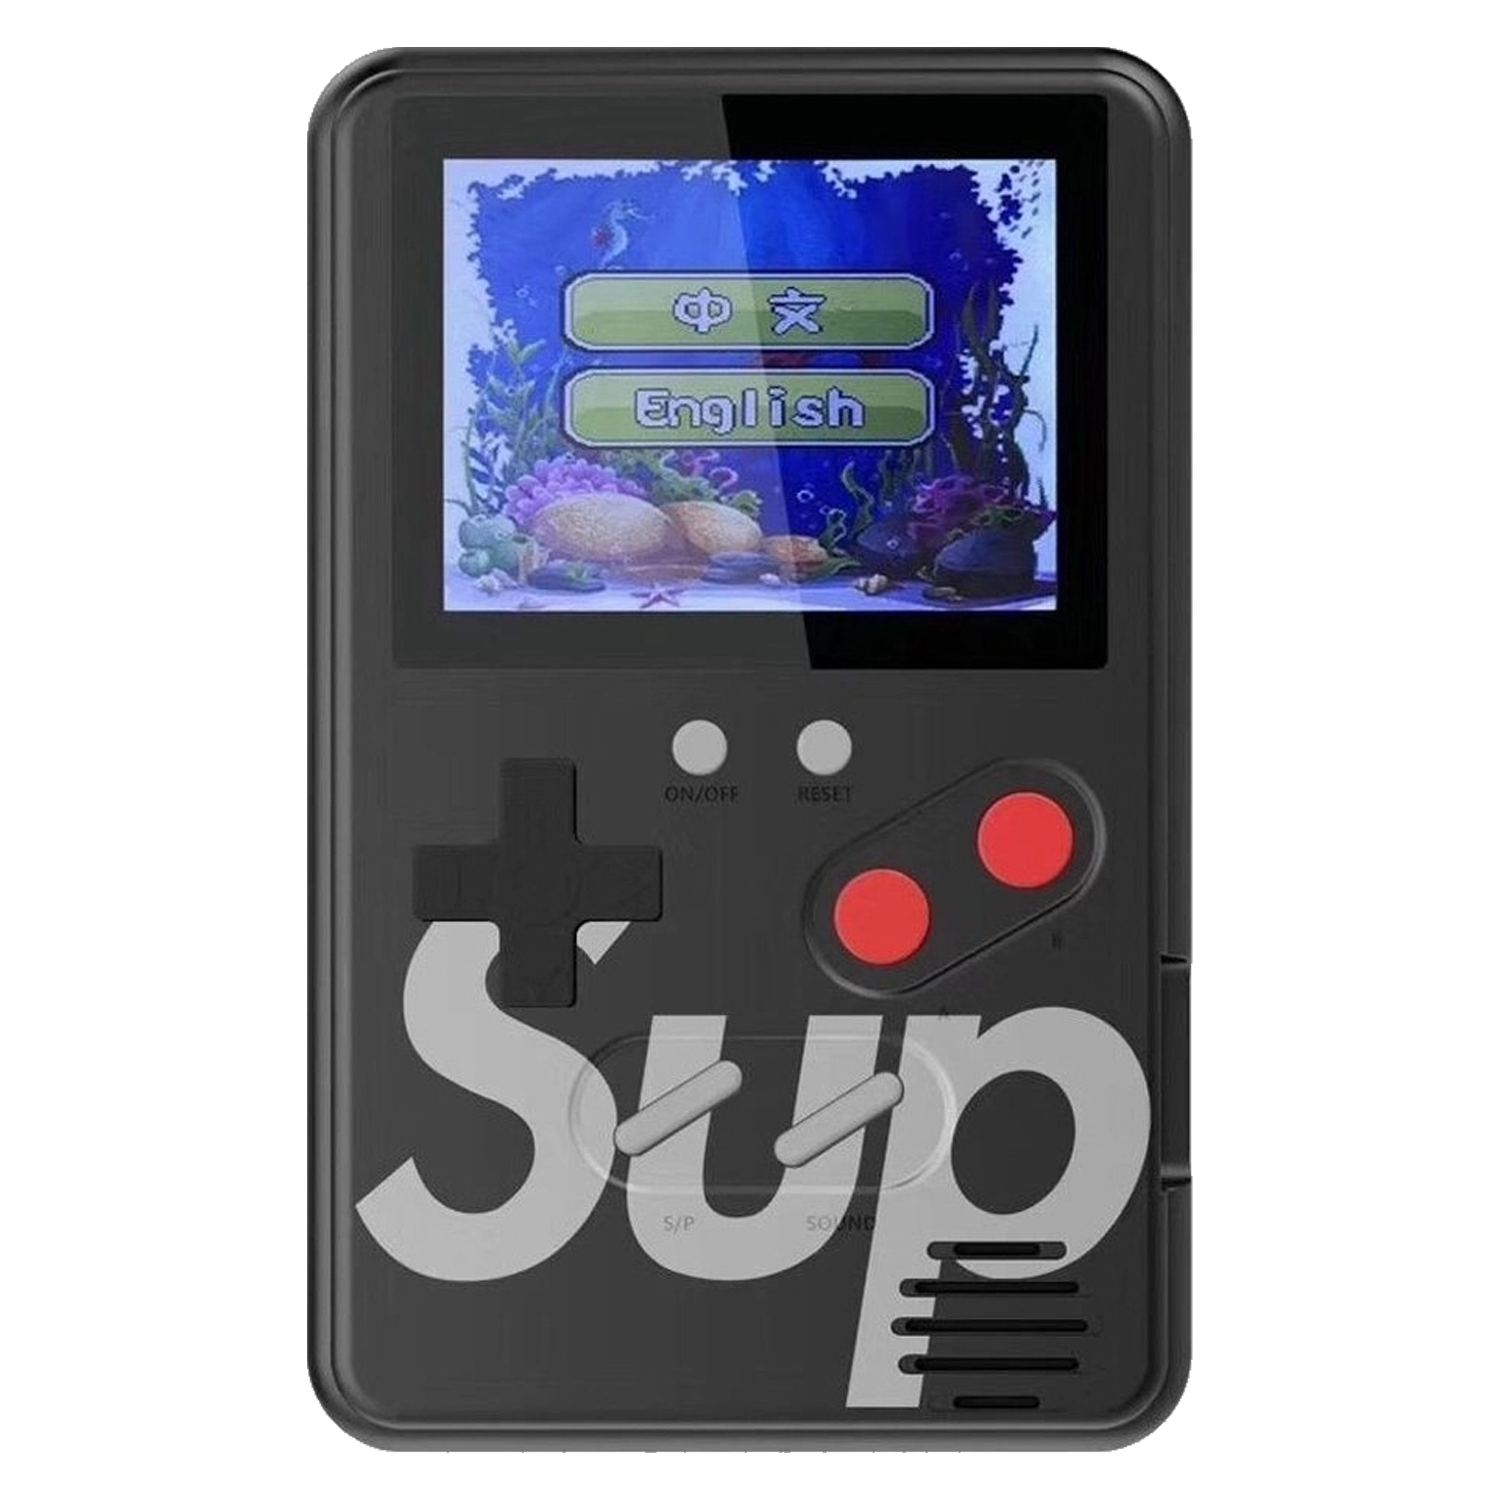 Console Game Boy Wanle Sup Slim 500 Jogos em 1 - Preto